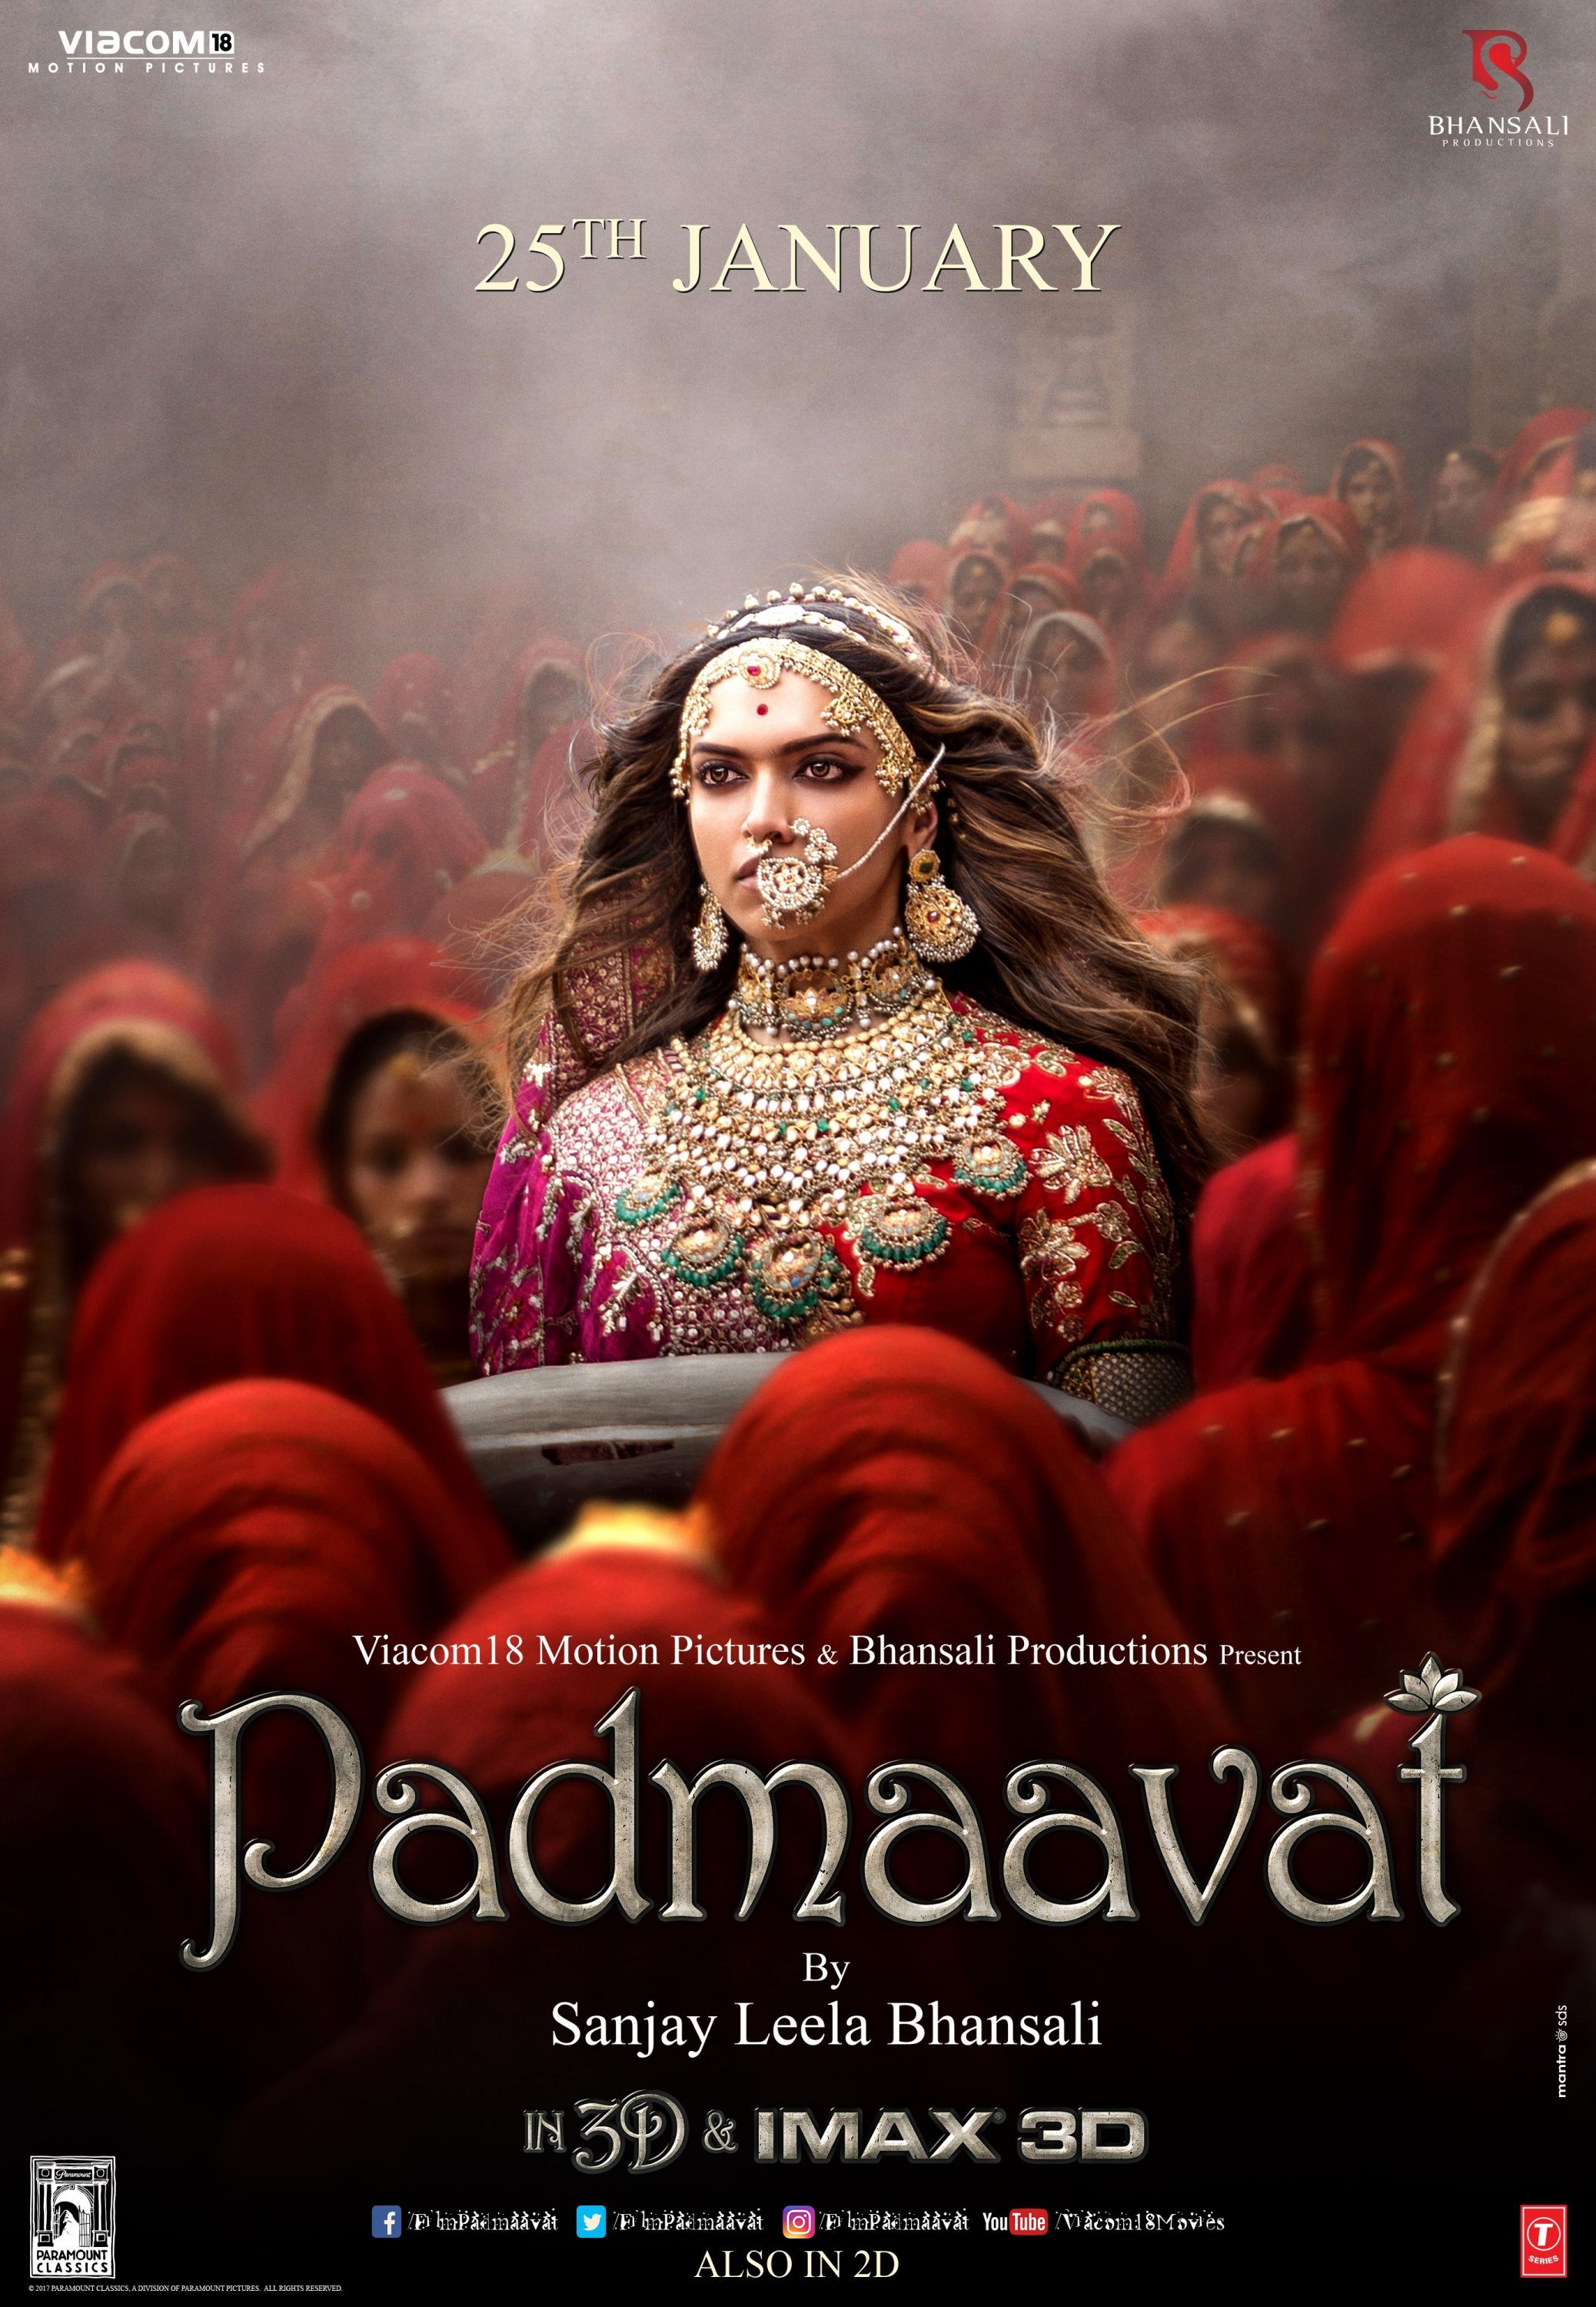 Best Diwali Movies To Watch